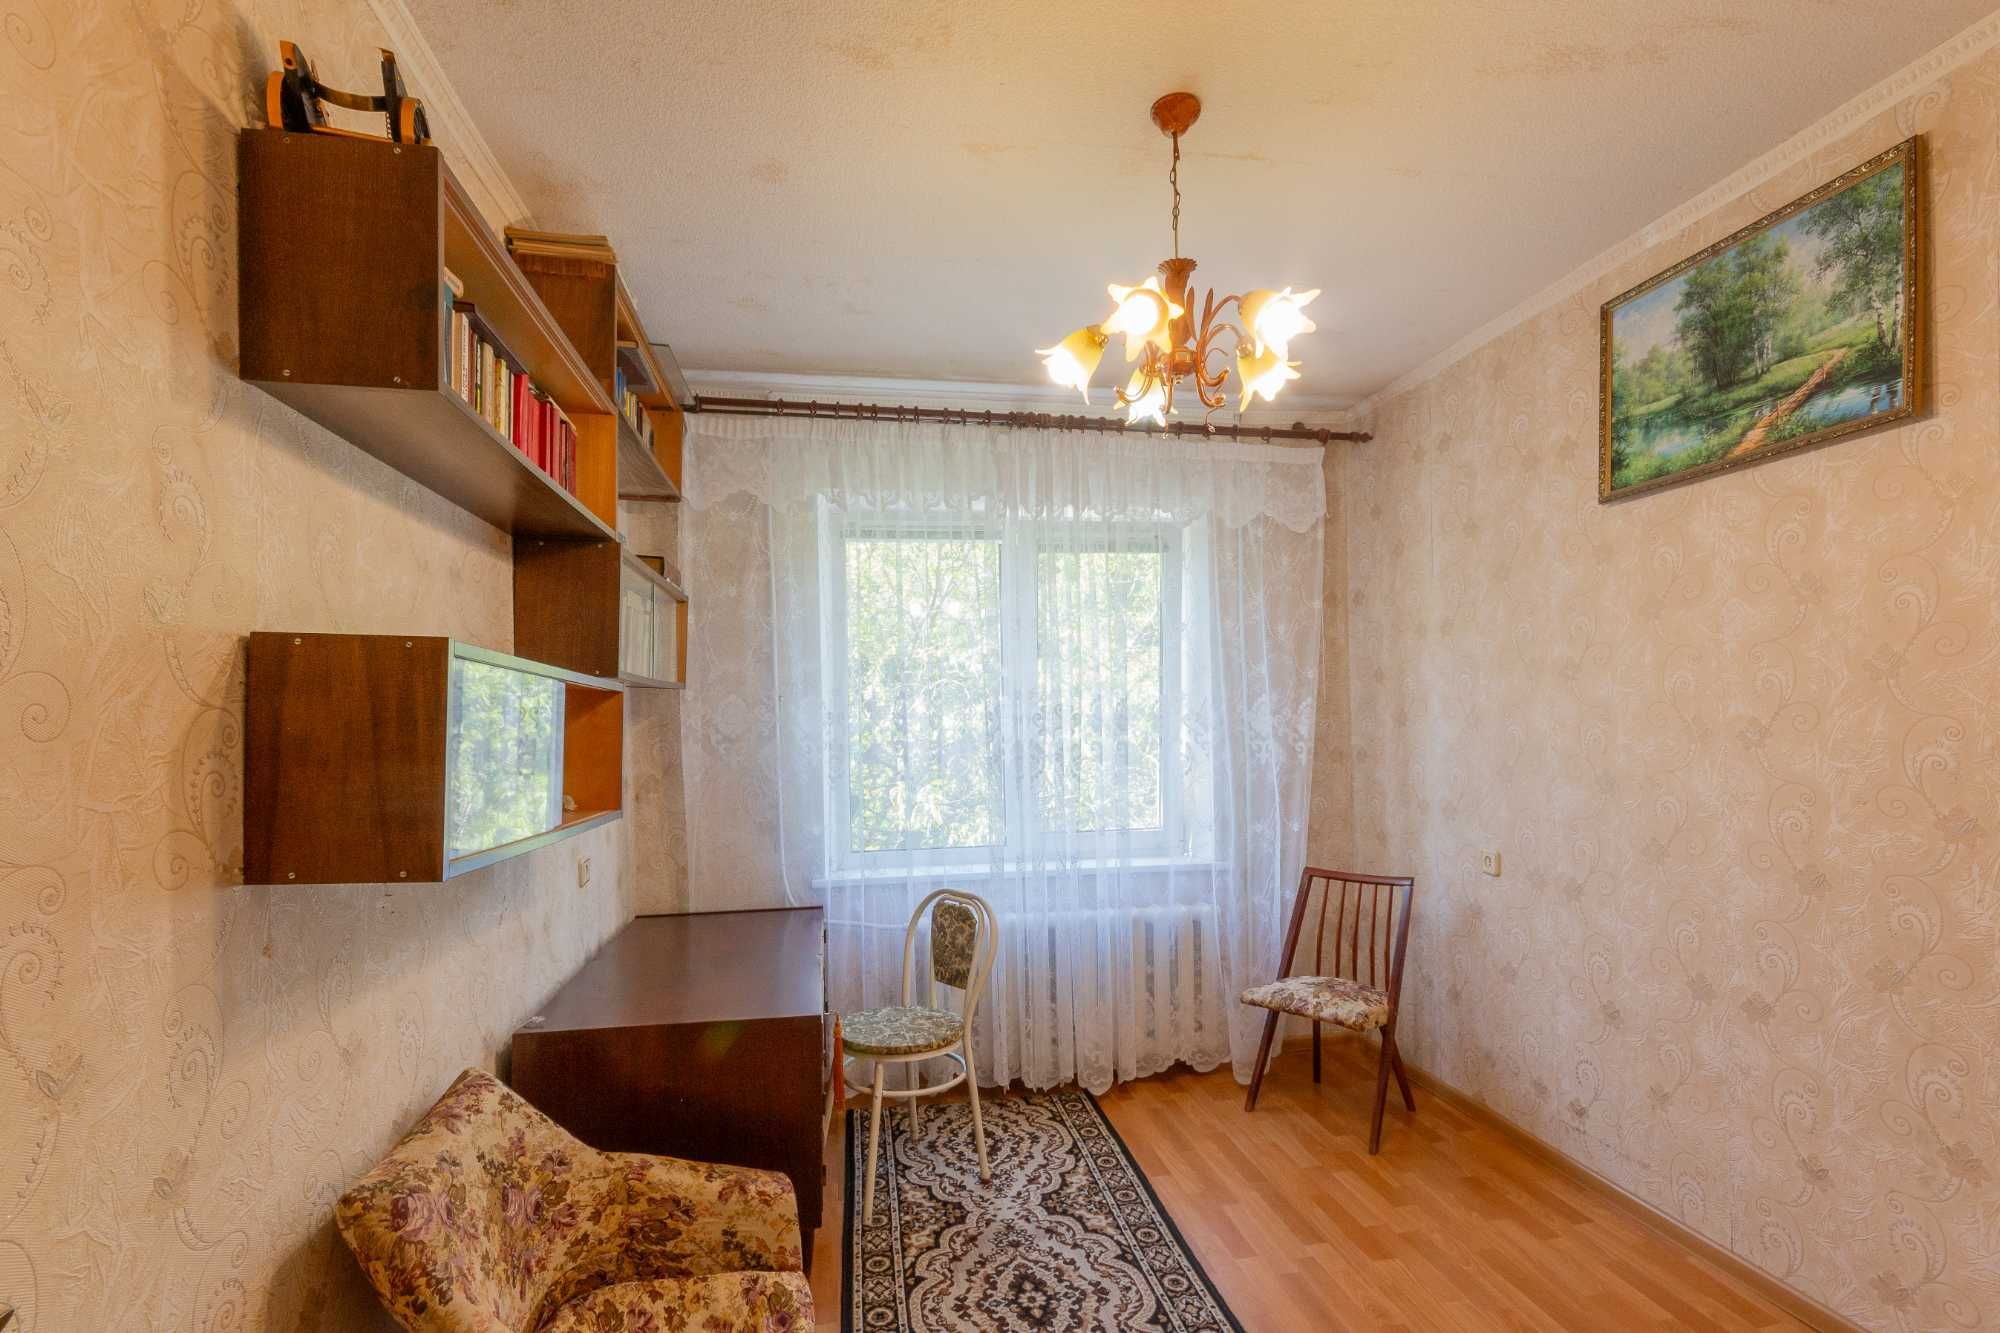 Продается 3-комнатная квартира на ж/м Сокол-1. Лучшее предложение!